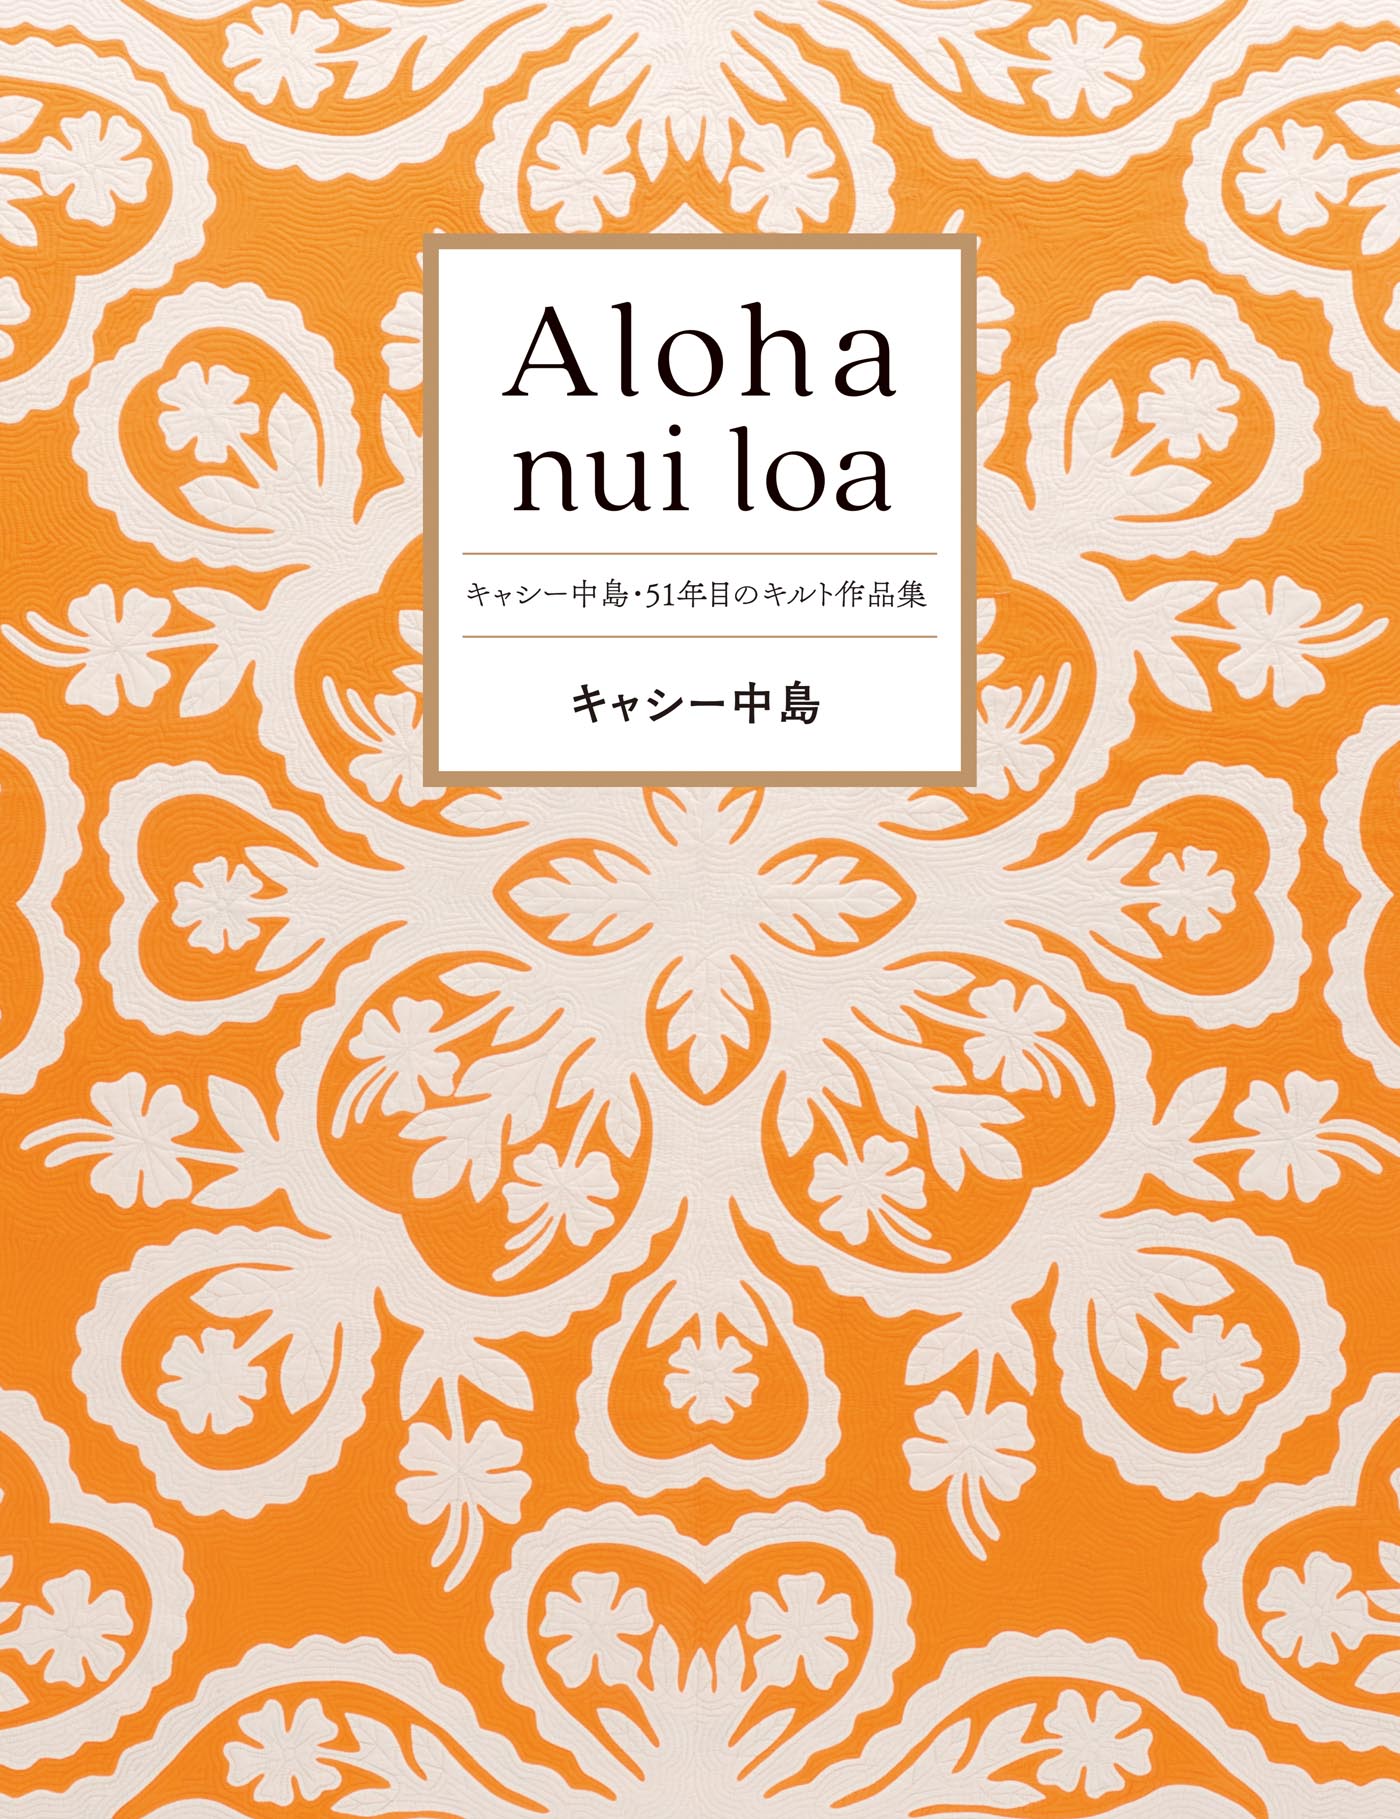 Aloha nui loa～キャシー中島・51年目のキルト作品集 | ブックライブ